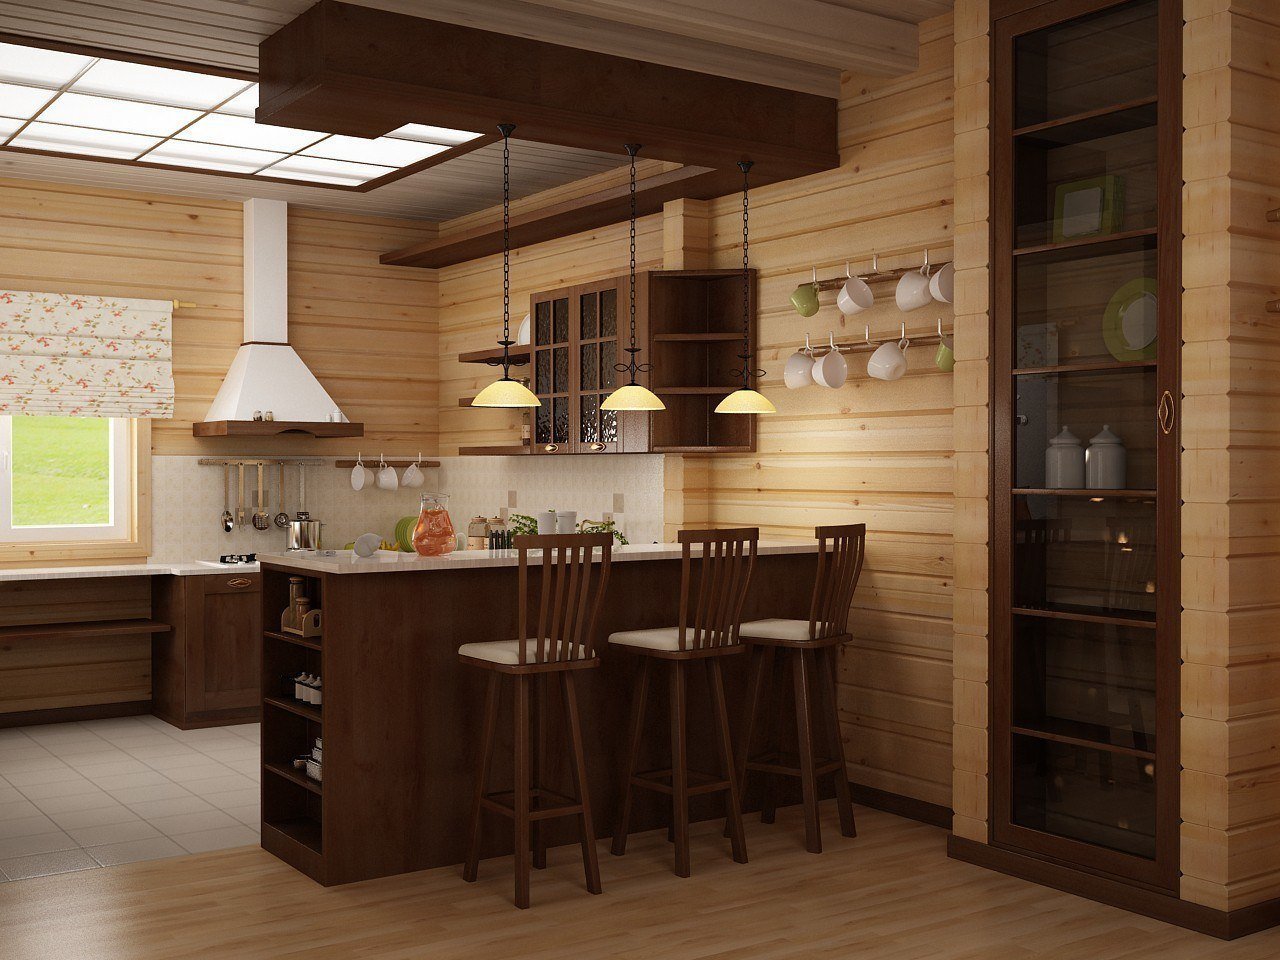 Кухня в деревянном доме: дизайн в бревенчатом стиле и отделка своими руками, как выбрать панели и деревянные рейки, материалы для интерьера